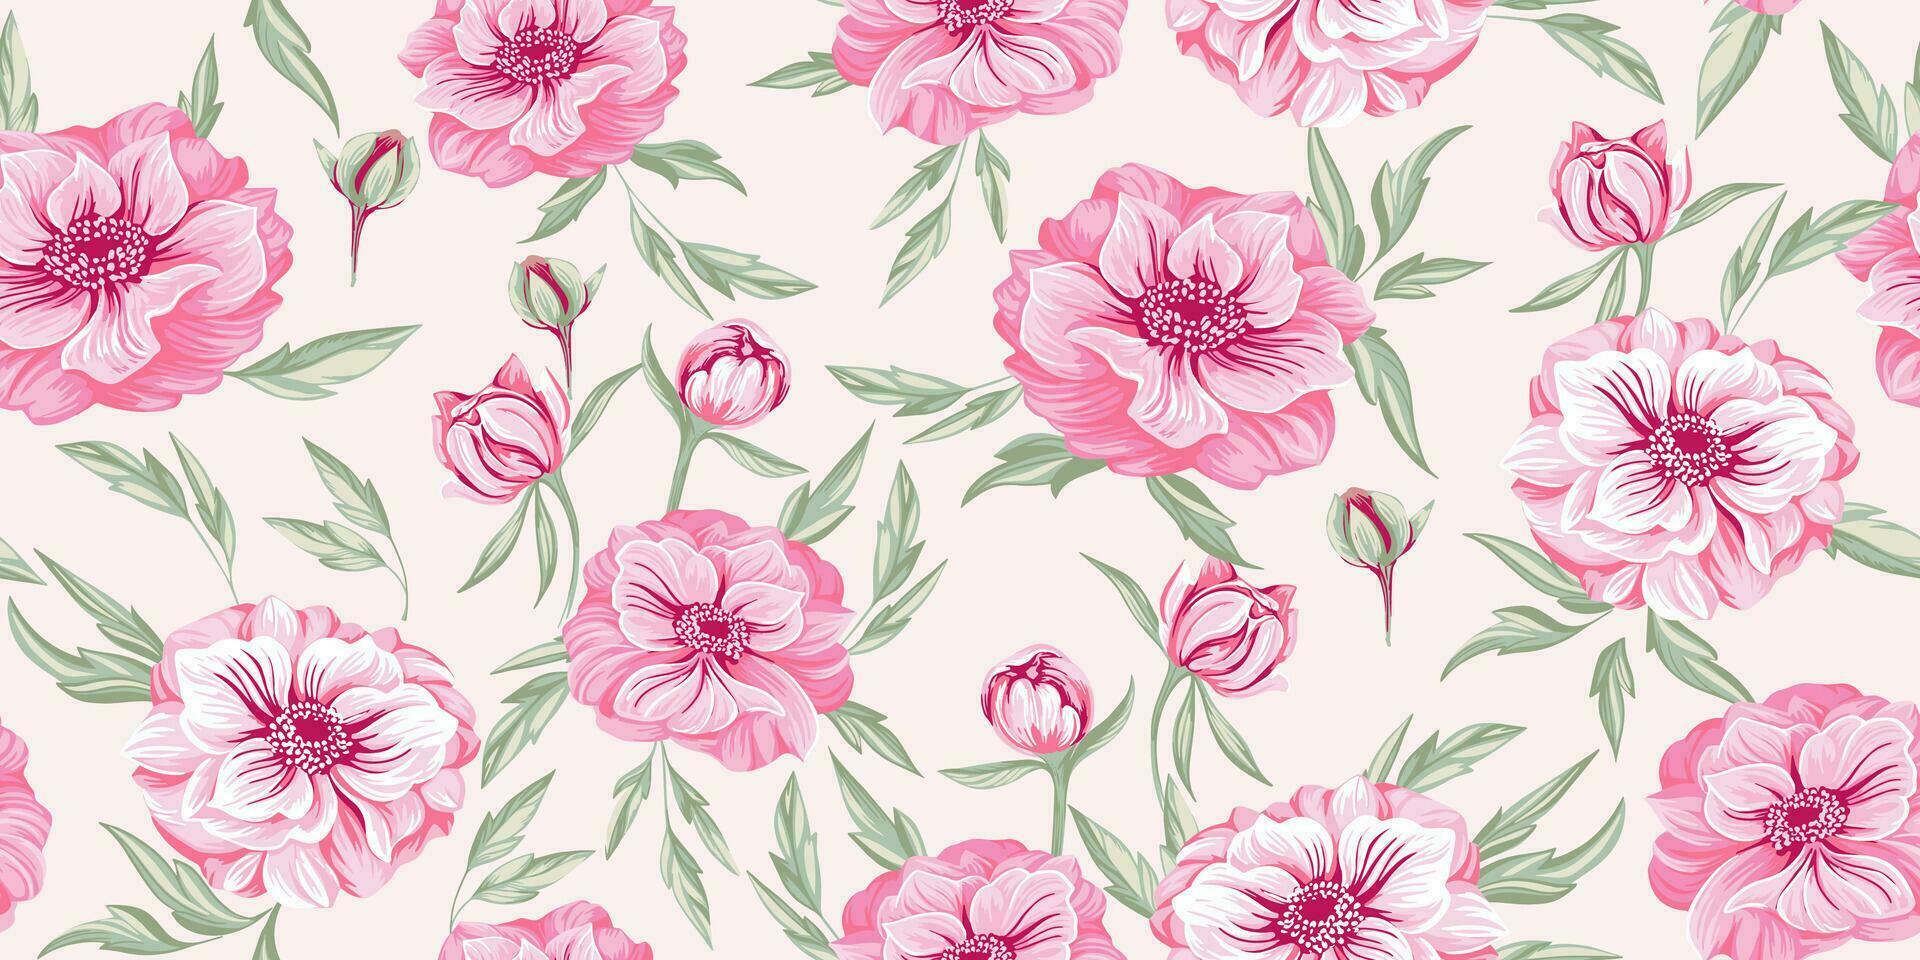 konstnärlig vår pastell rosa blommor och löv sömlös mönster. vektor hand dragen ranunkel, trollius asiatic oss blomma, klot blomma. mall för design, textil, mode, skriva ut, tapet